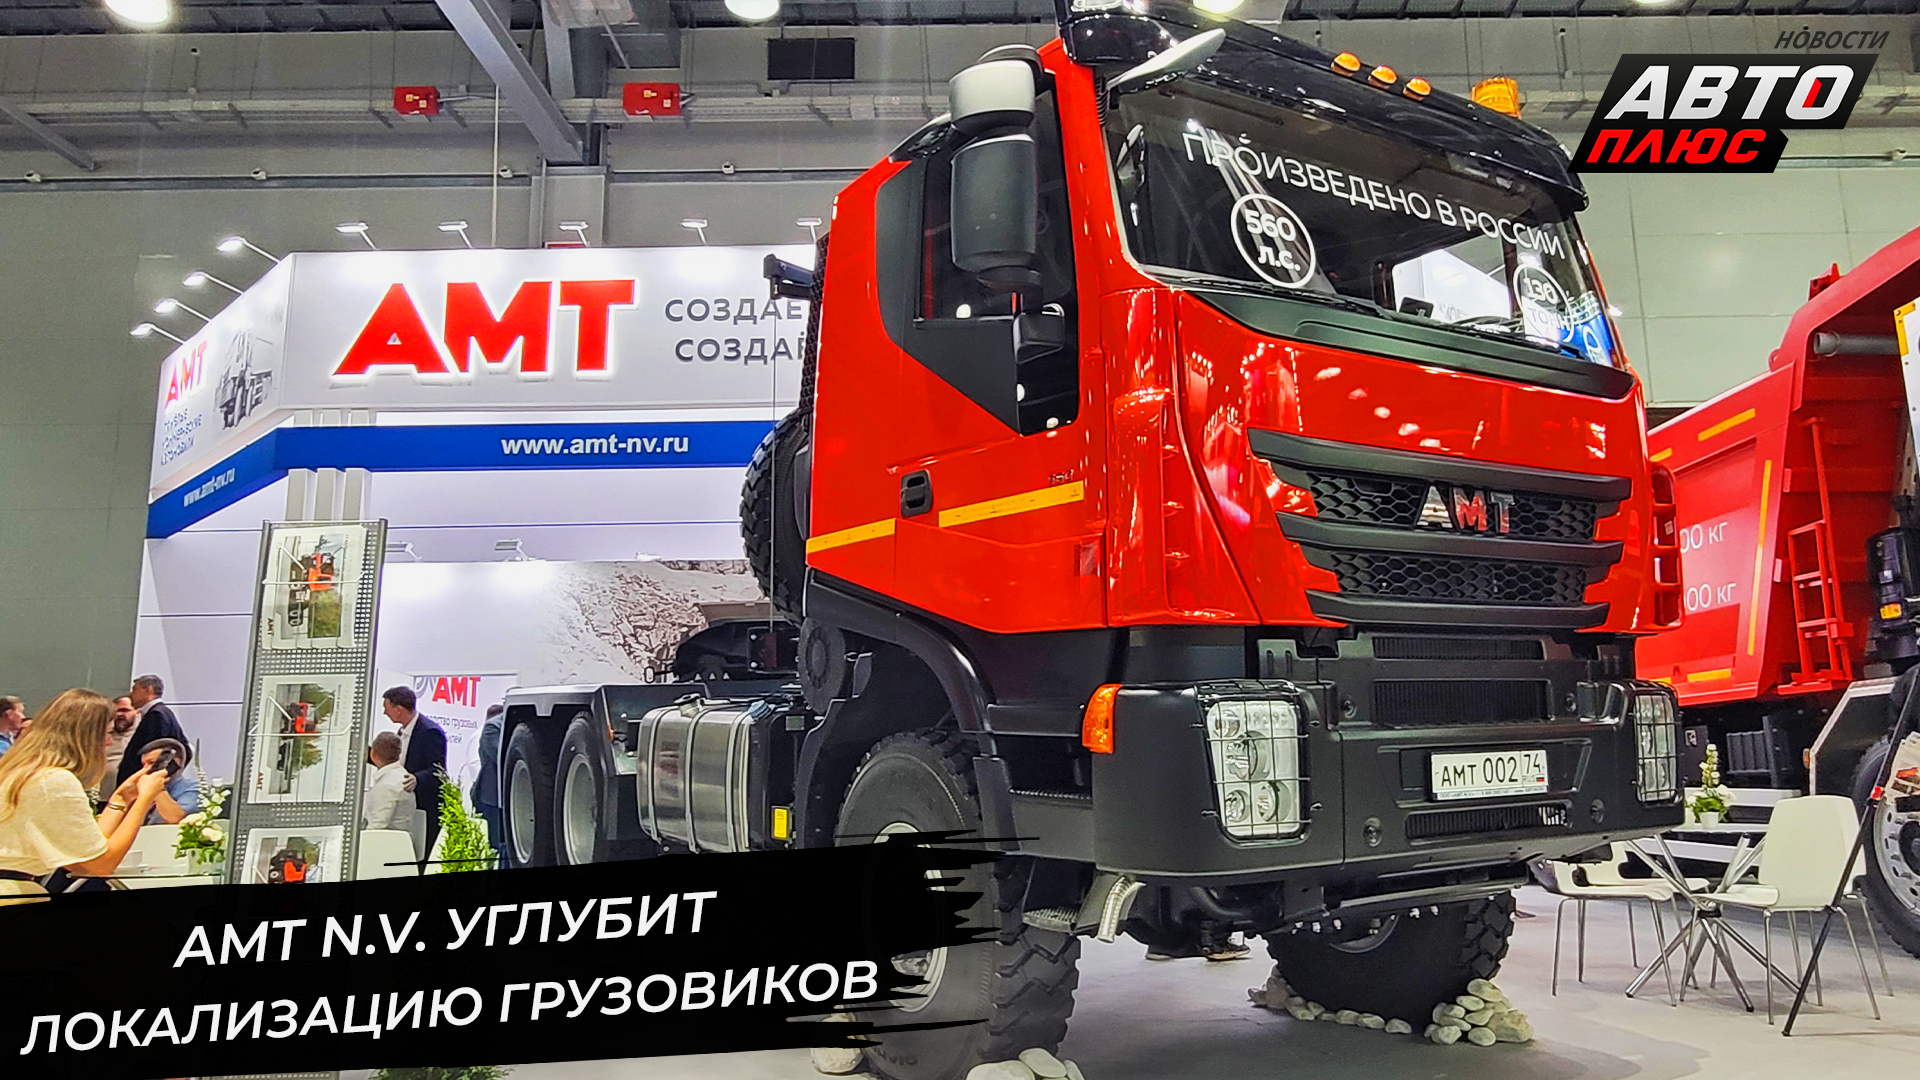 AMT N.V. углубит локализацию. АМТ-432901 возьмётся за среднюю тонну 📺 Новости с колёс №2943